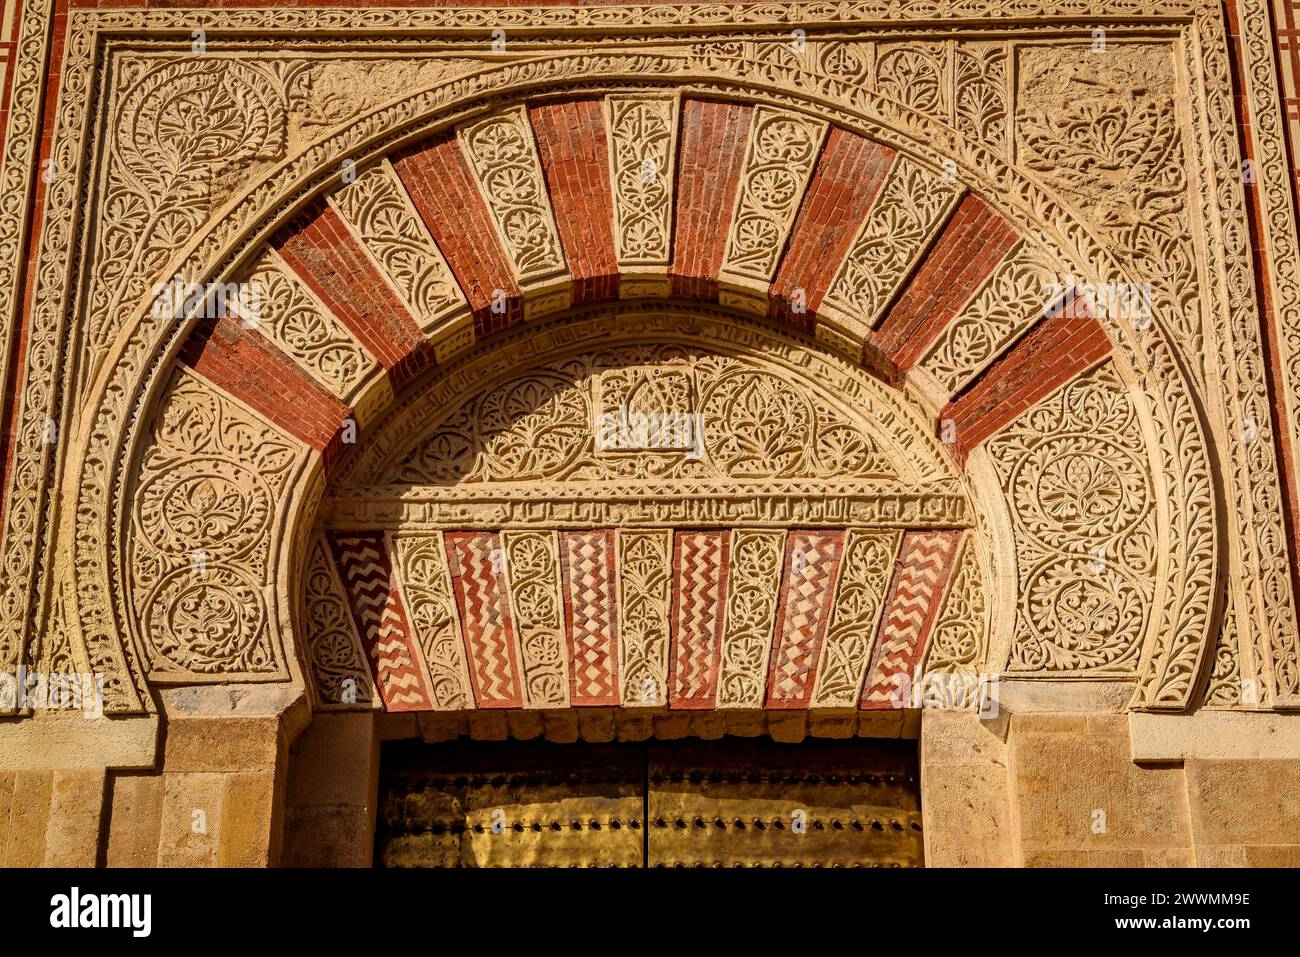 Dekorative Hufeisenbögen an der Fassade der Moschee-Kathedrale von Córdoba (Córdoba, Andalusien, Spanien) ESP: Arcos de herradura decorativos Stockfoto